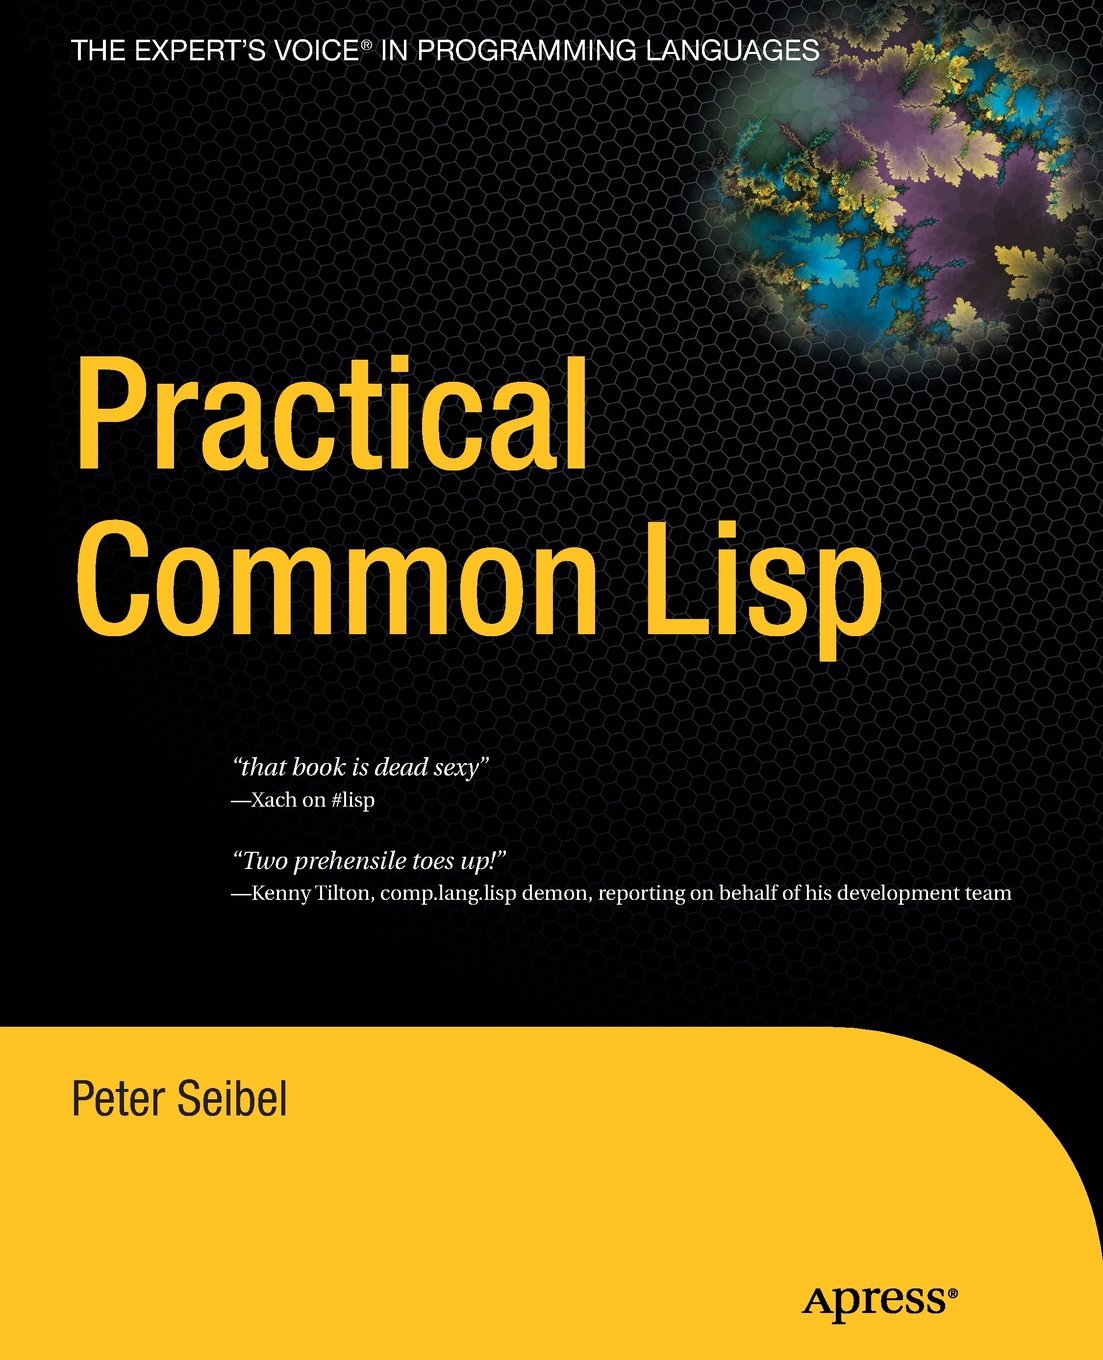 Common Lisp Books | Common Lisp